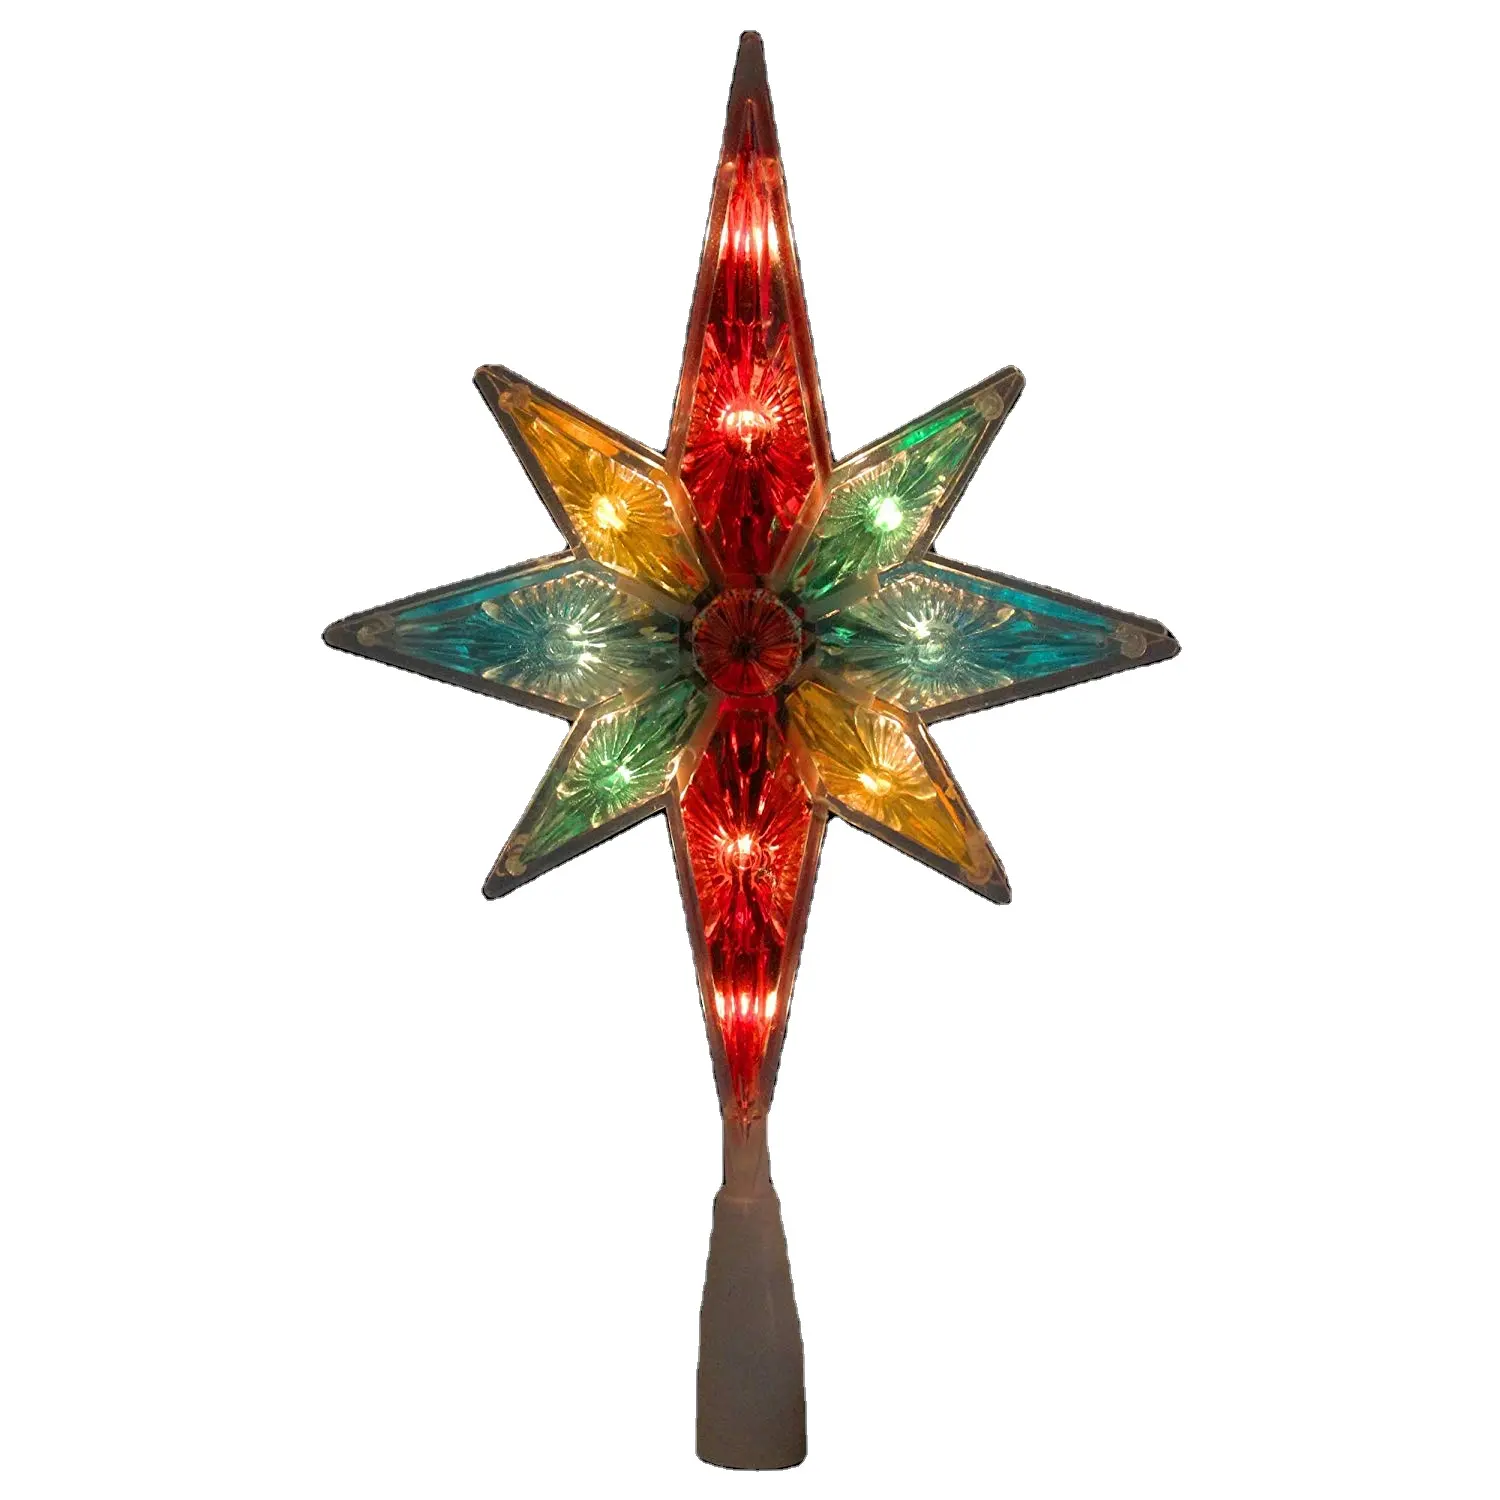 UL 11 "Bintang Bersegi Warna-warni dari Betlehem Pohon Natal Puncak dengan 10 <span class=keywords><strong>Lampu</strong></span>